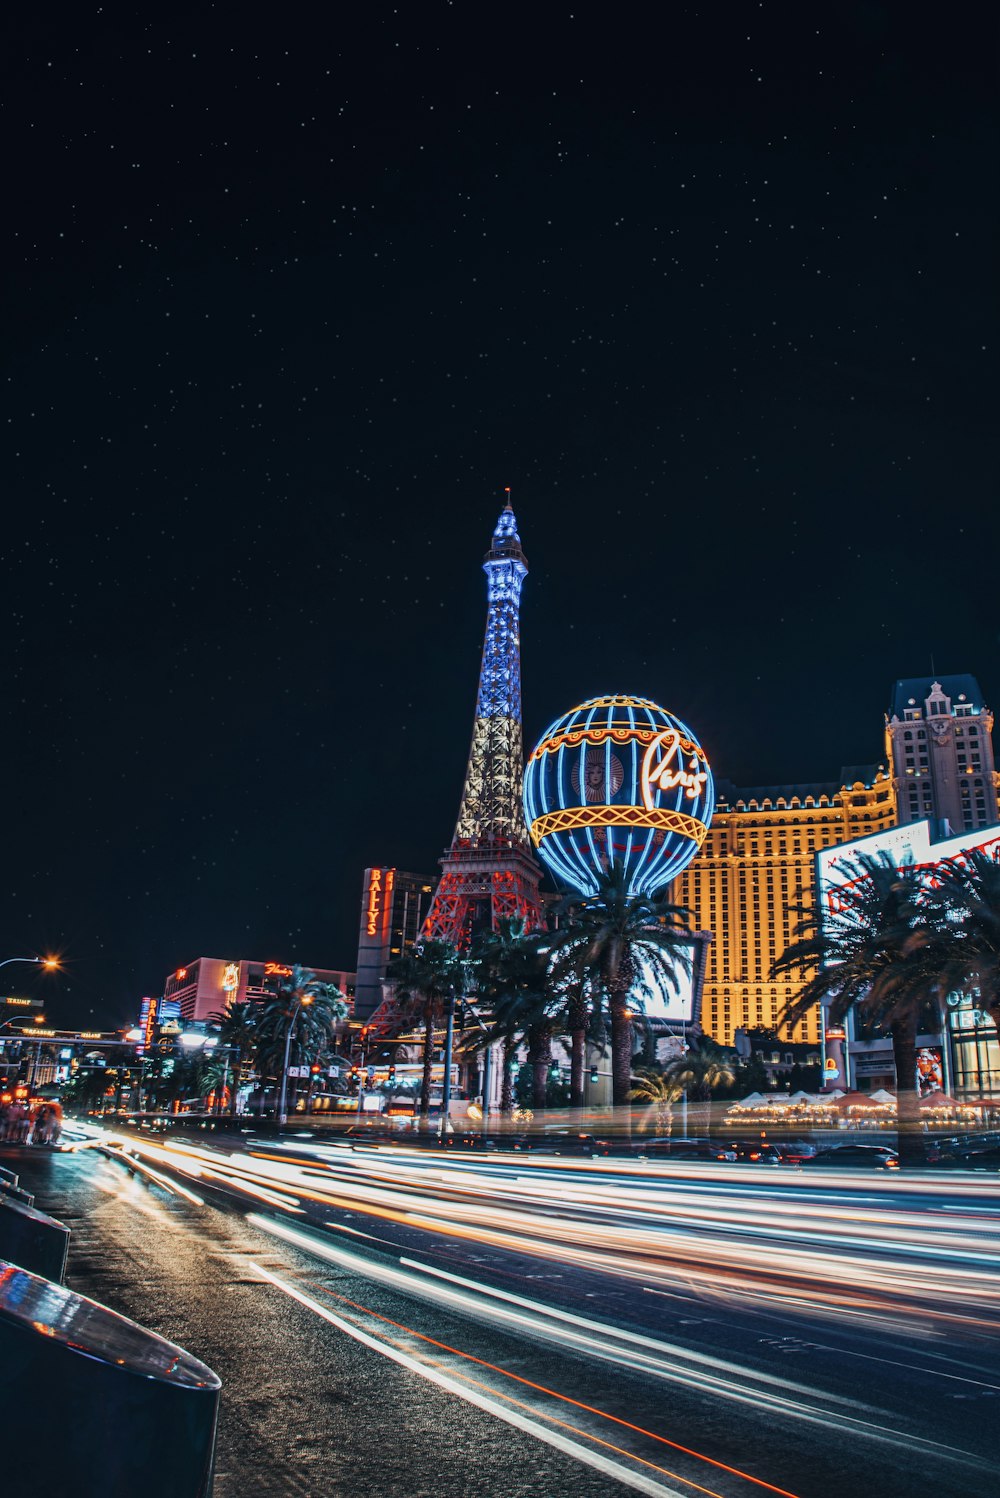 Las Vegas in Pictures